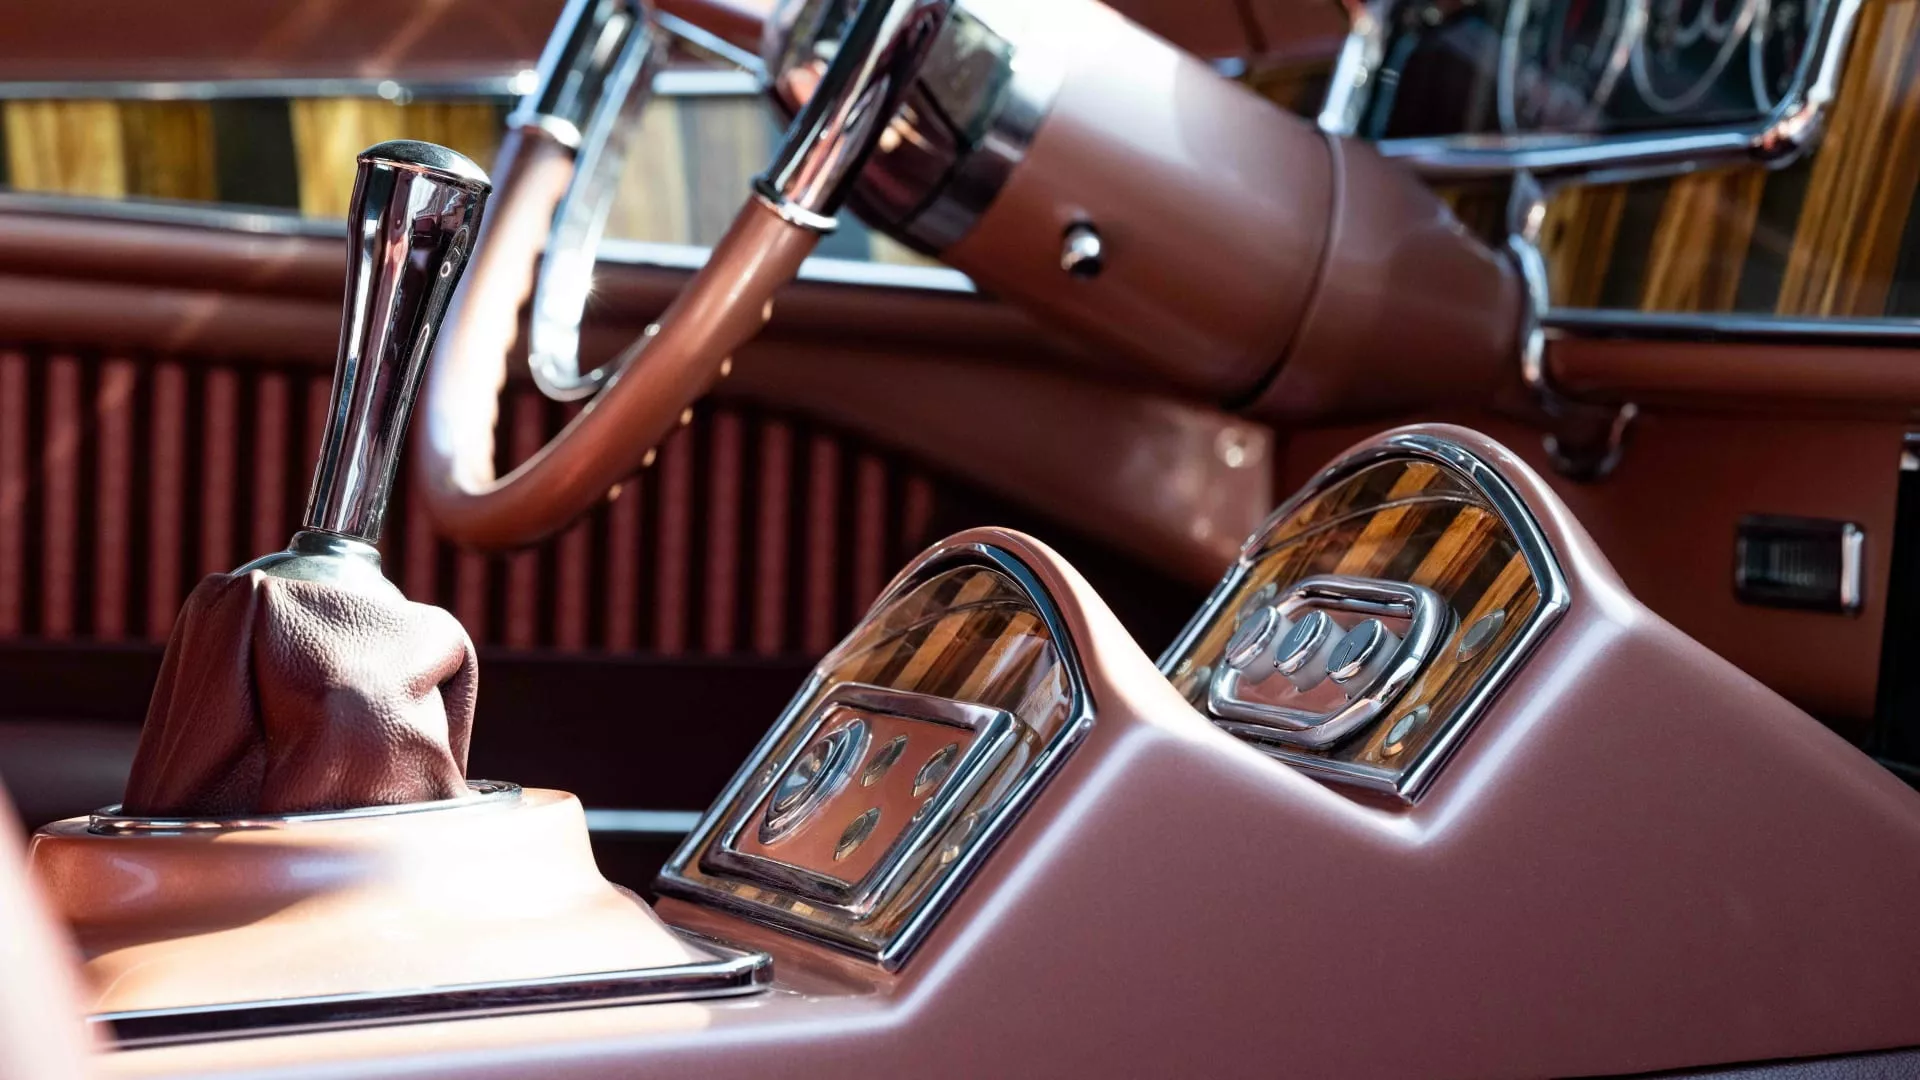 كاديلاك الدورادو 1959 تعود للحياة بتعديلات شاملة ومحرك 10.3 لتر وسعر يتجاوز 2 مليون دولار 92